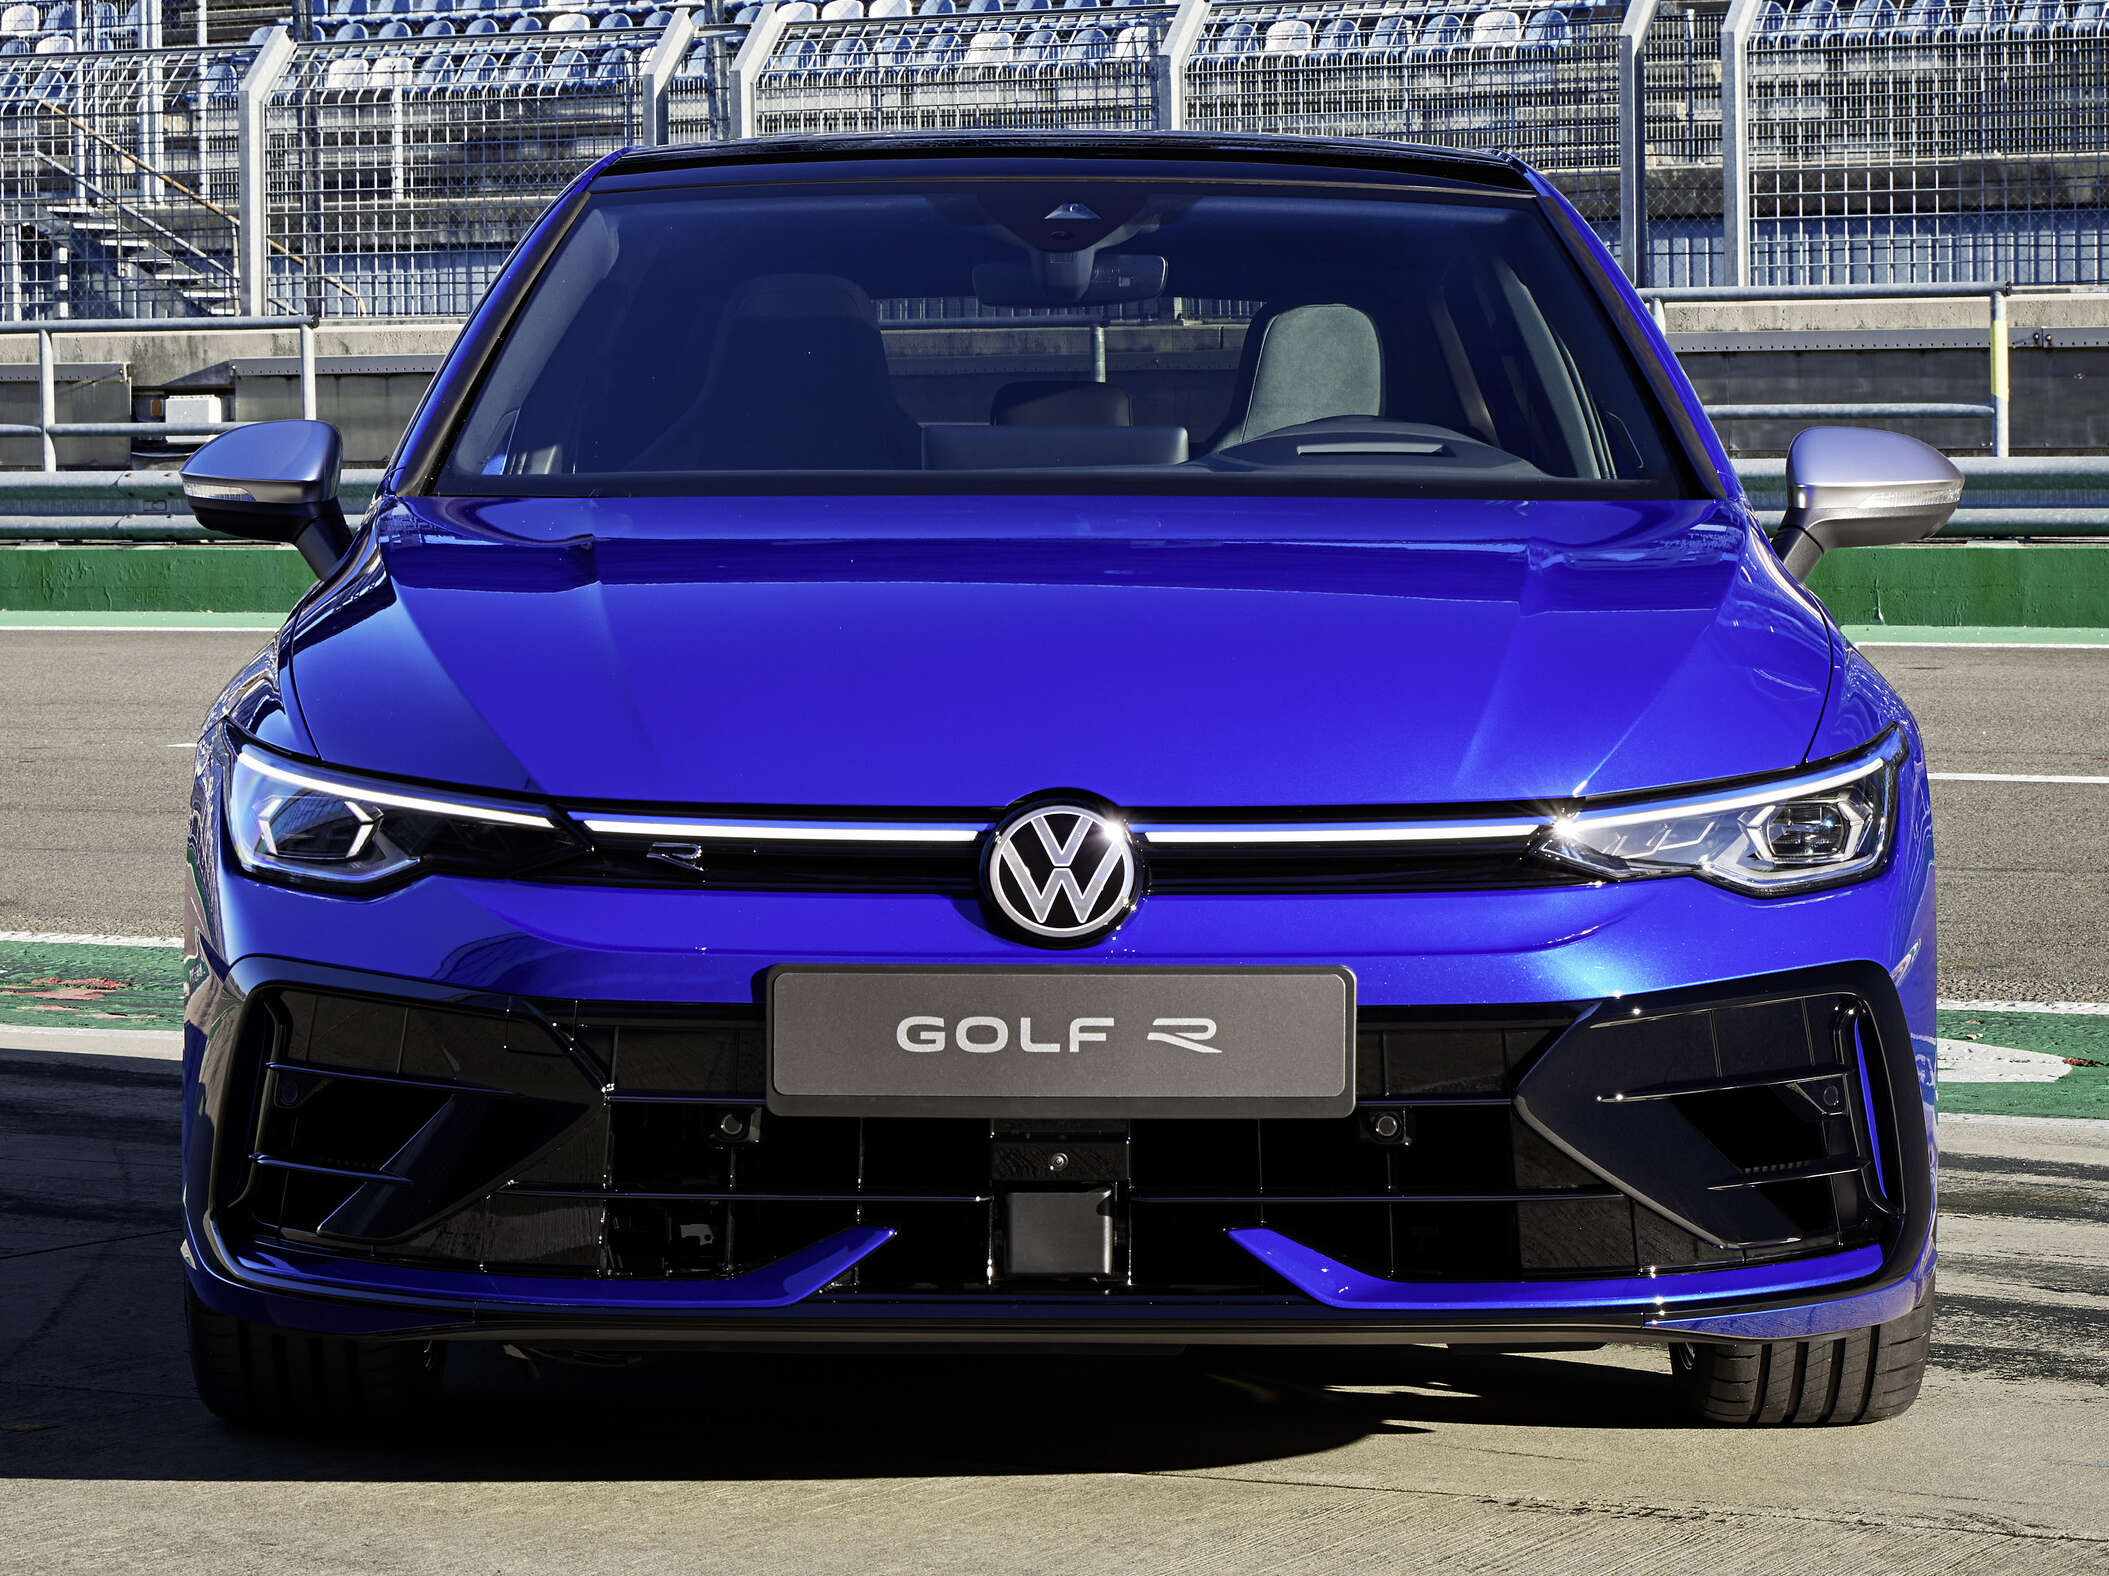 The new Volkswagen Golf R